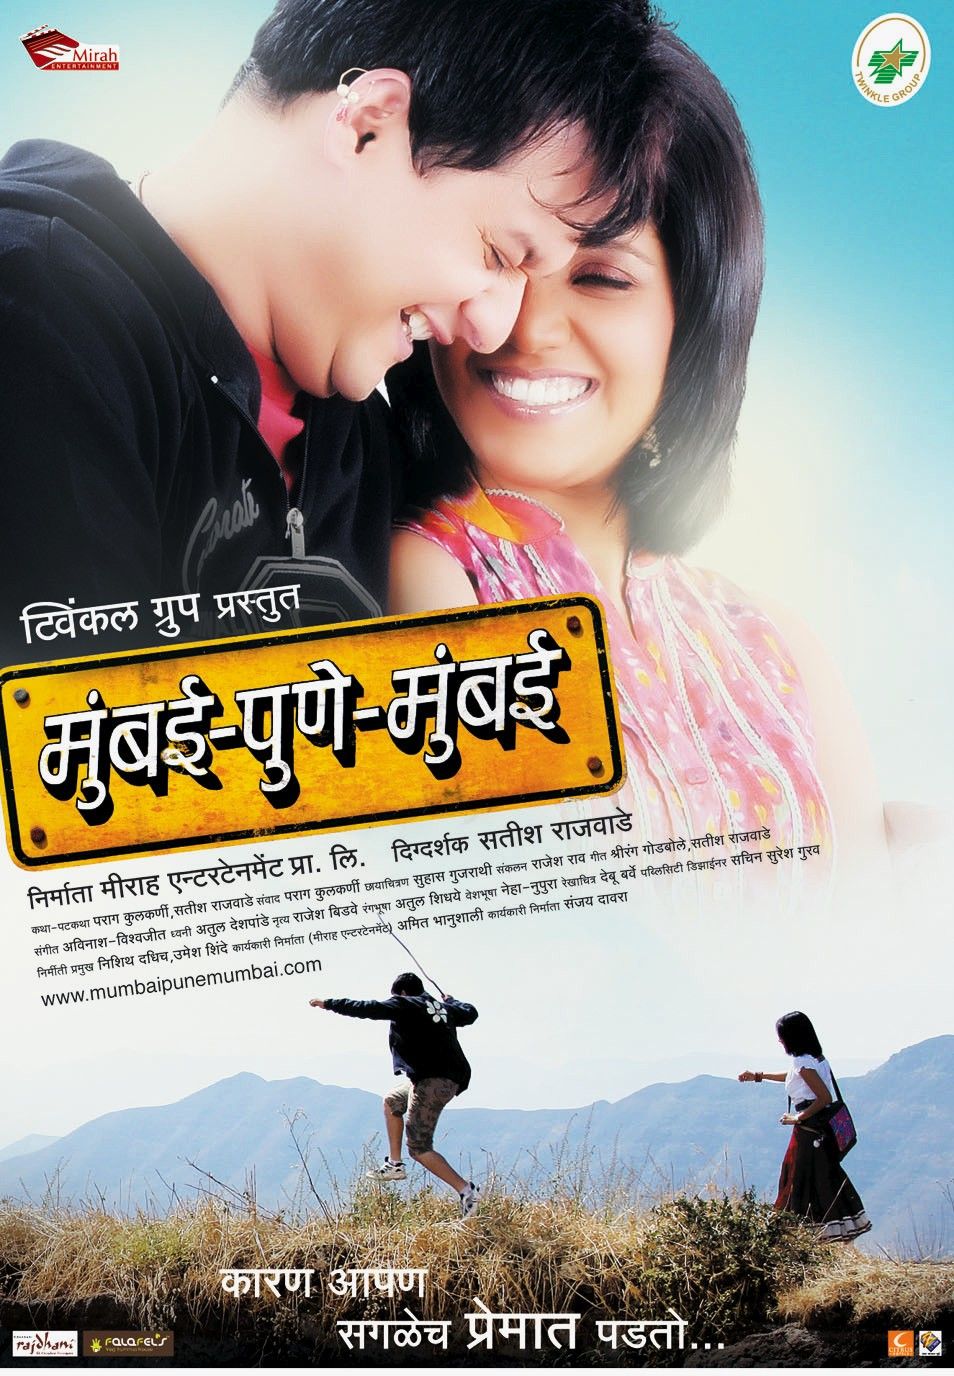 Extra Large Movie Poster Image for Mumbai-Pune-Mumbai (#5 of 12)